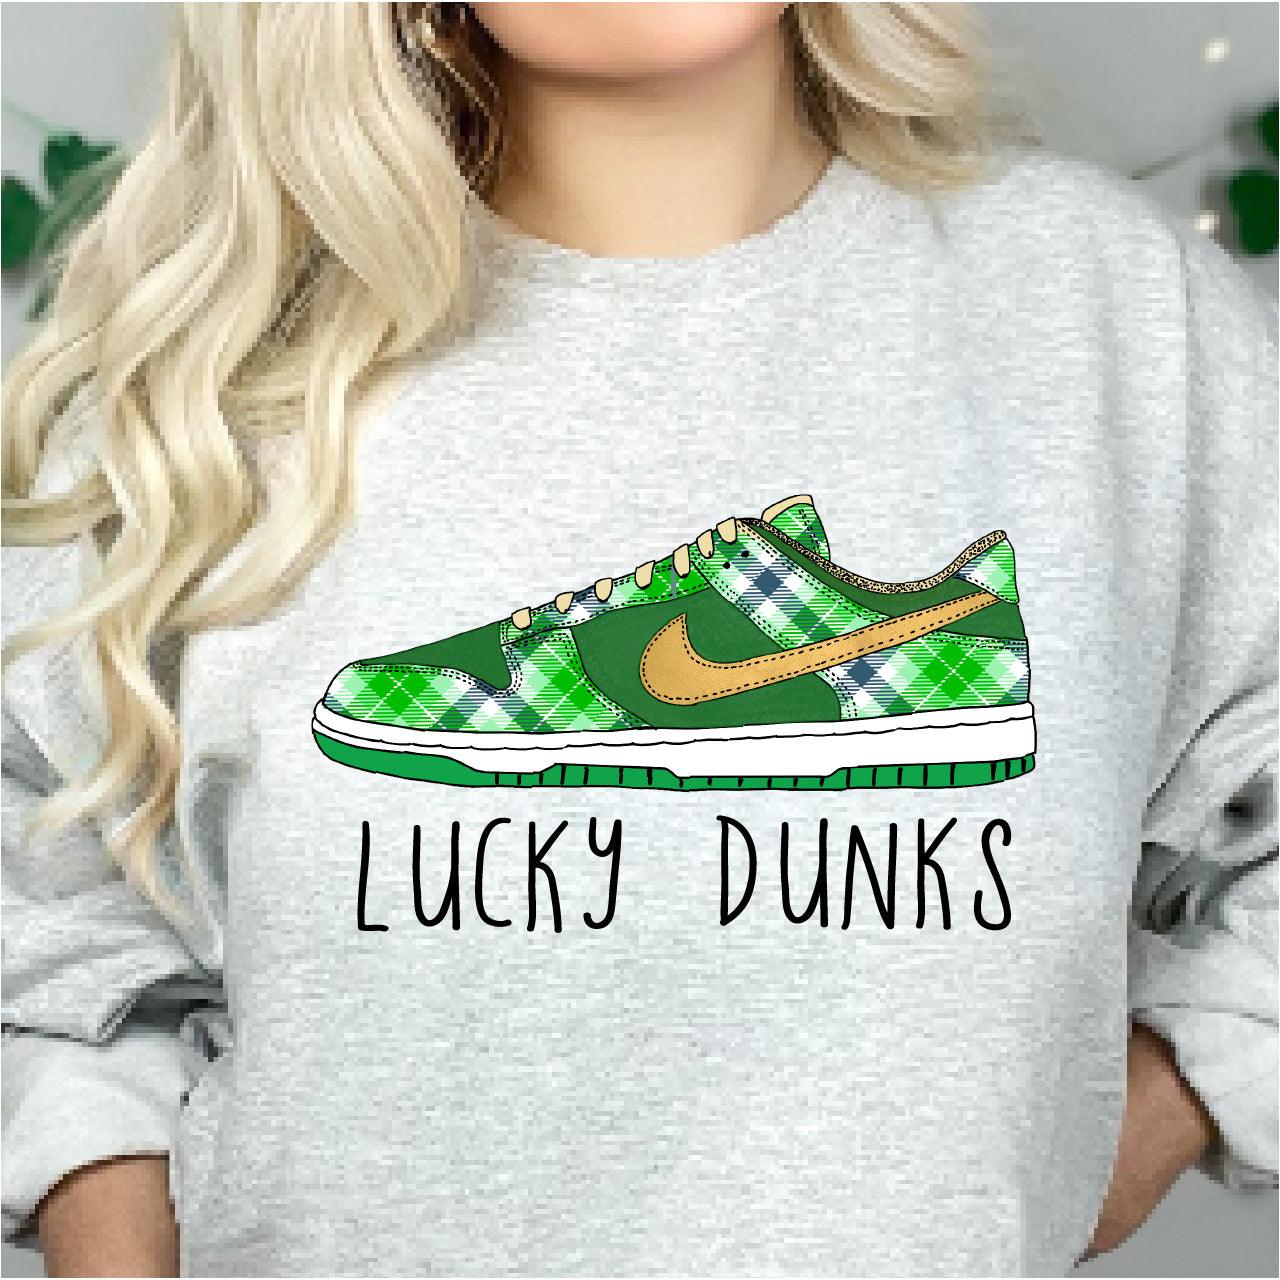 Lucky Dunks DTF T-Shirt Transfer Nashville Design House